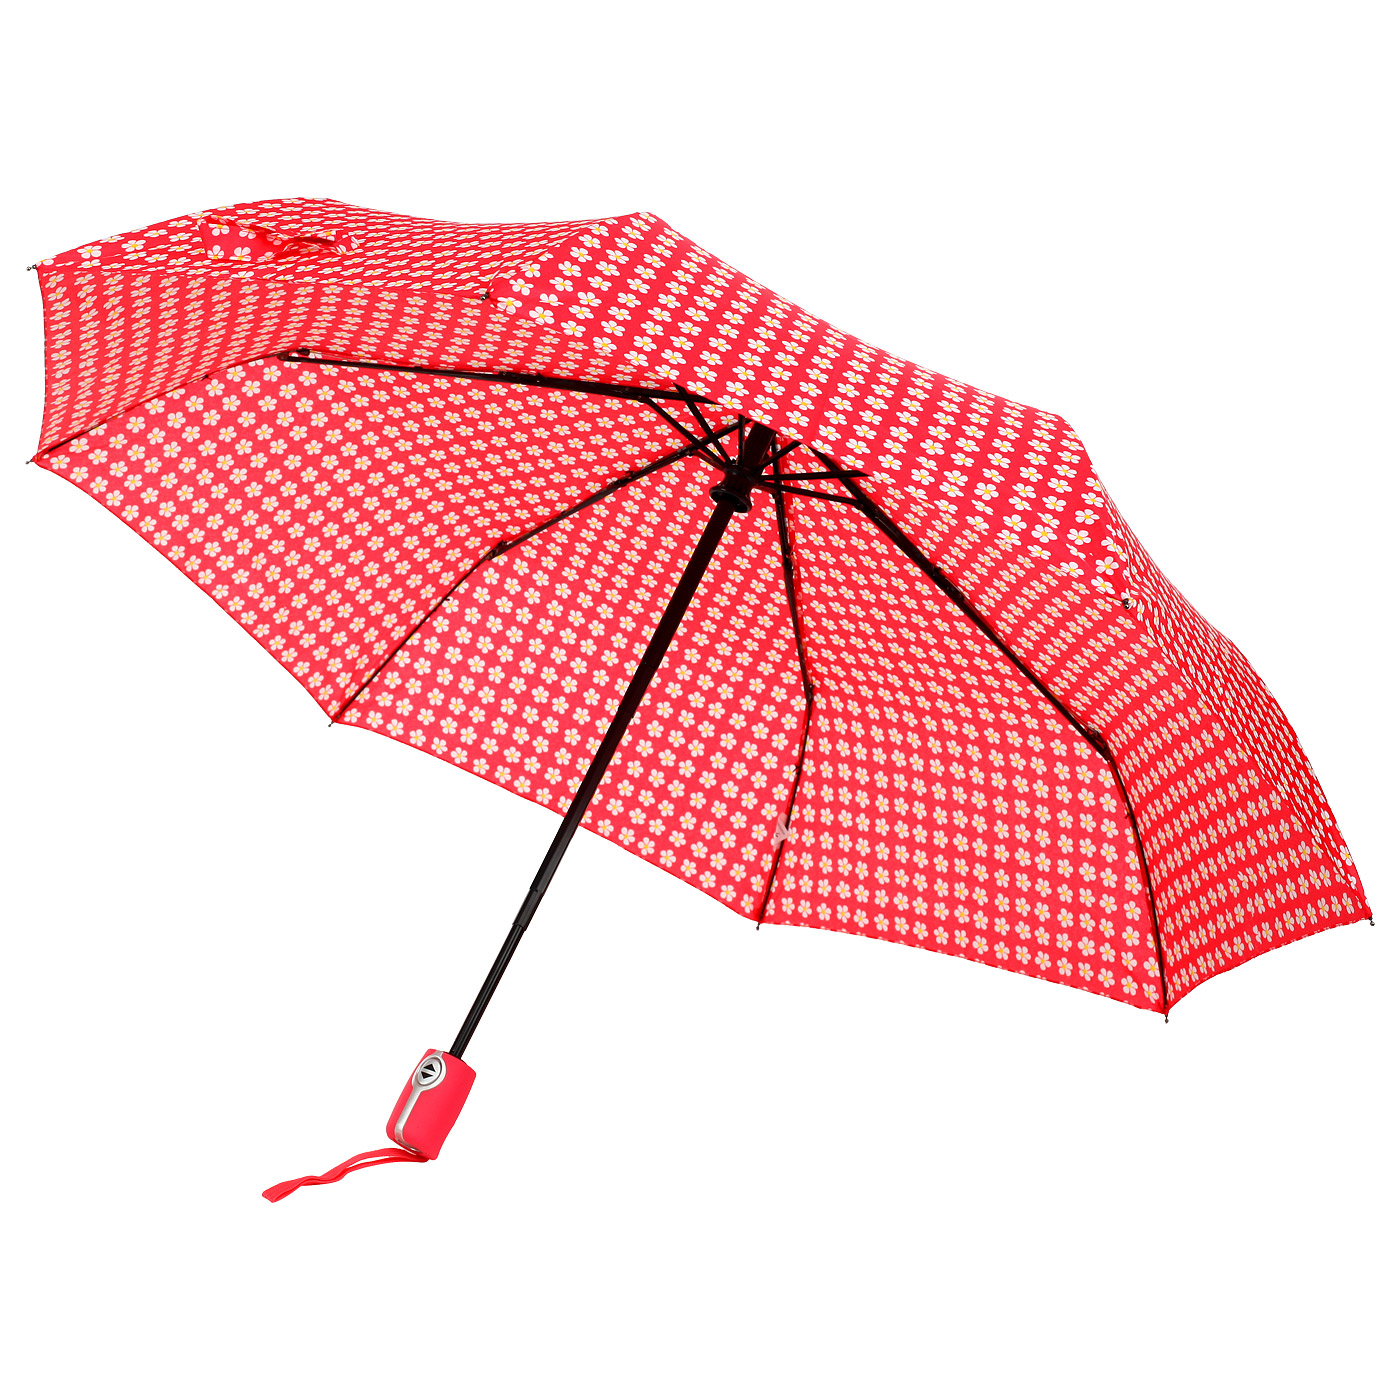 Зонтик легкий. Зонт складной SIPL bq13f. Зонт складной SWS. Складной зонт "Vilar". Steyr / зонт складной.